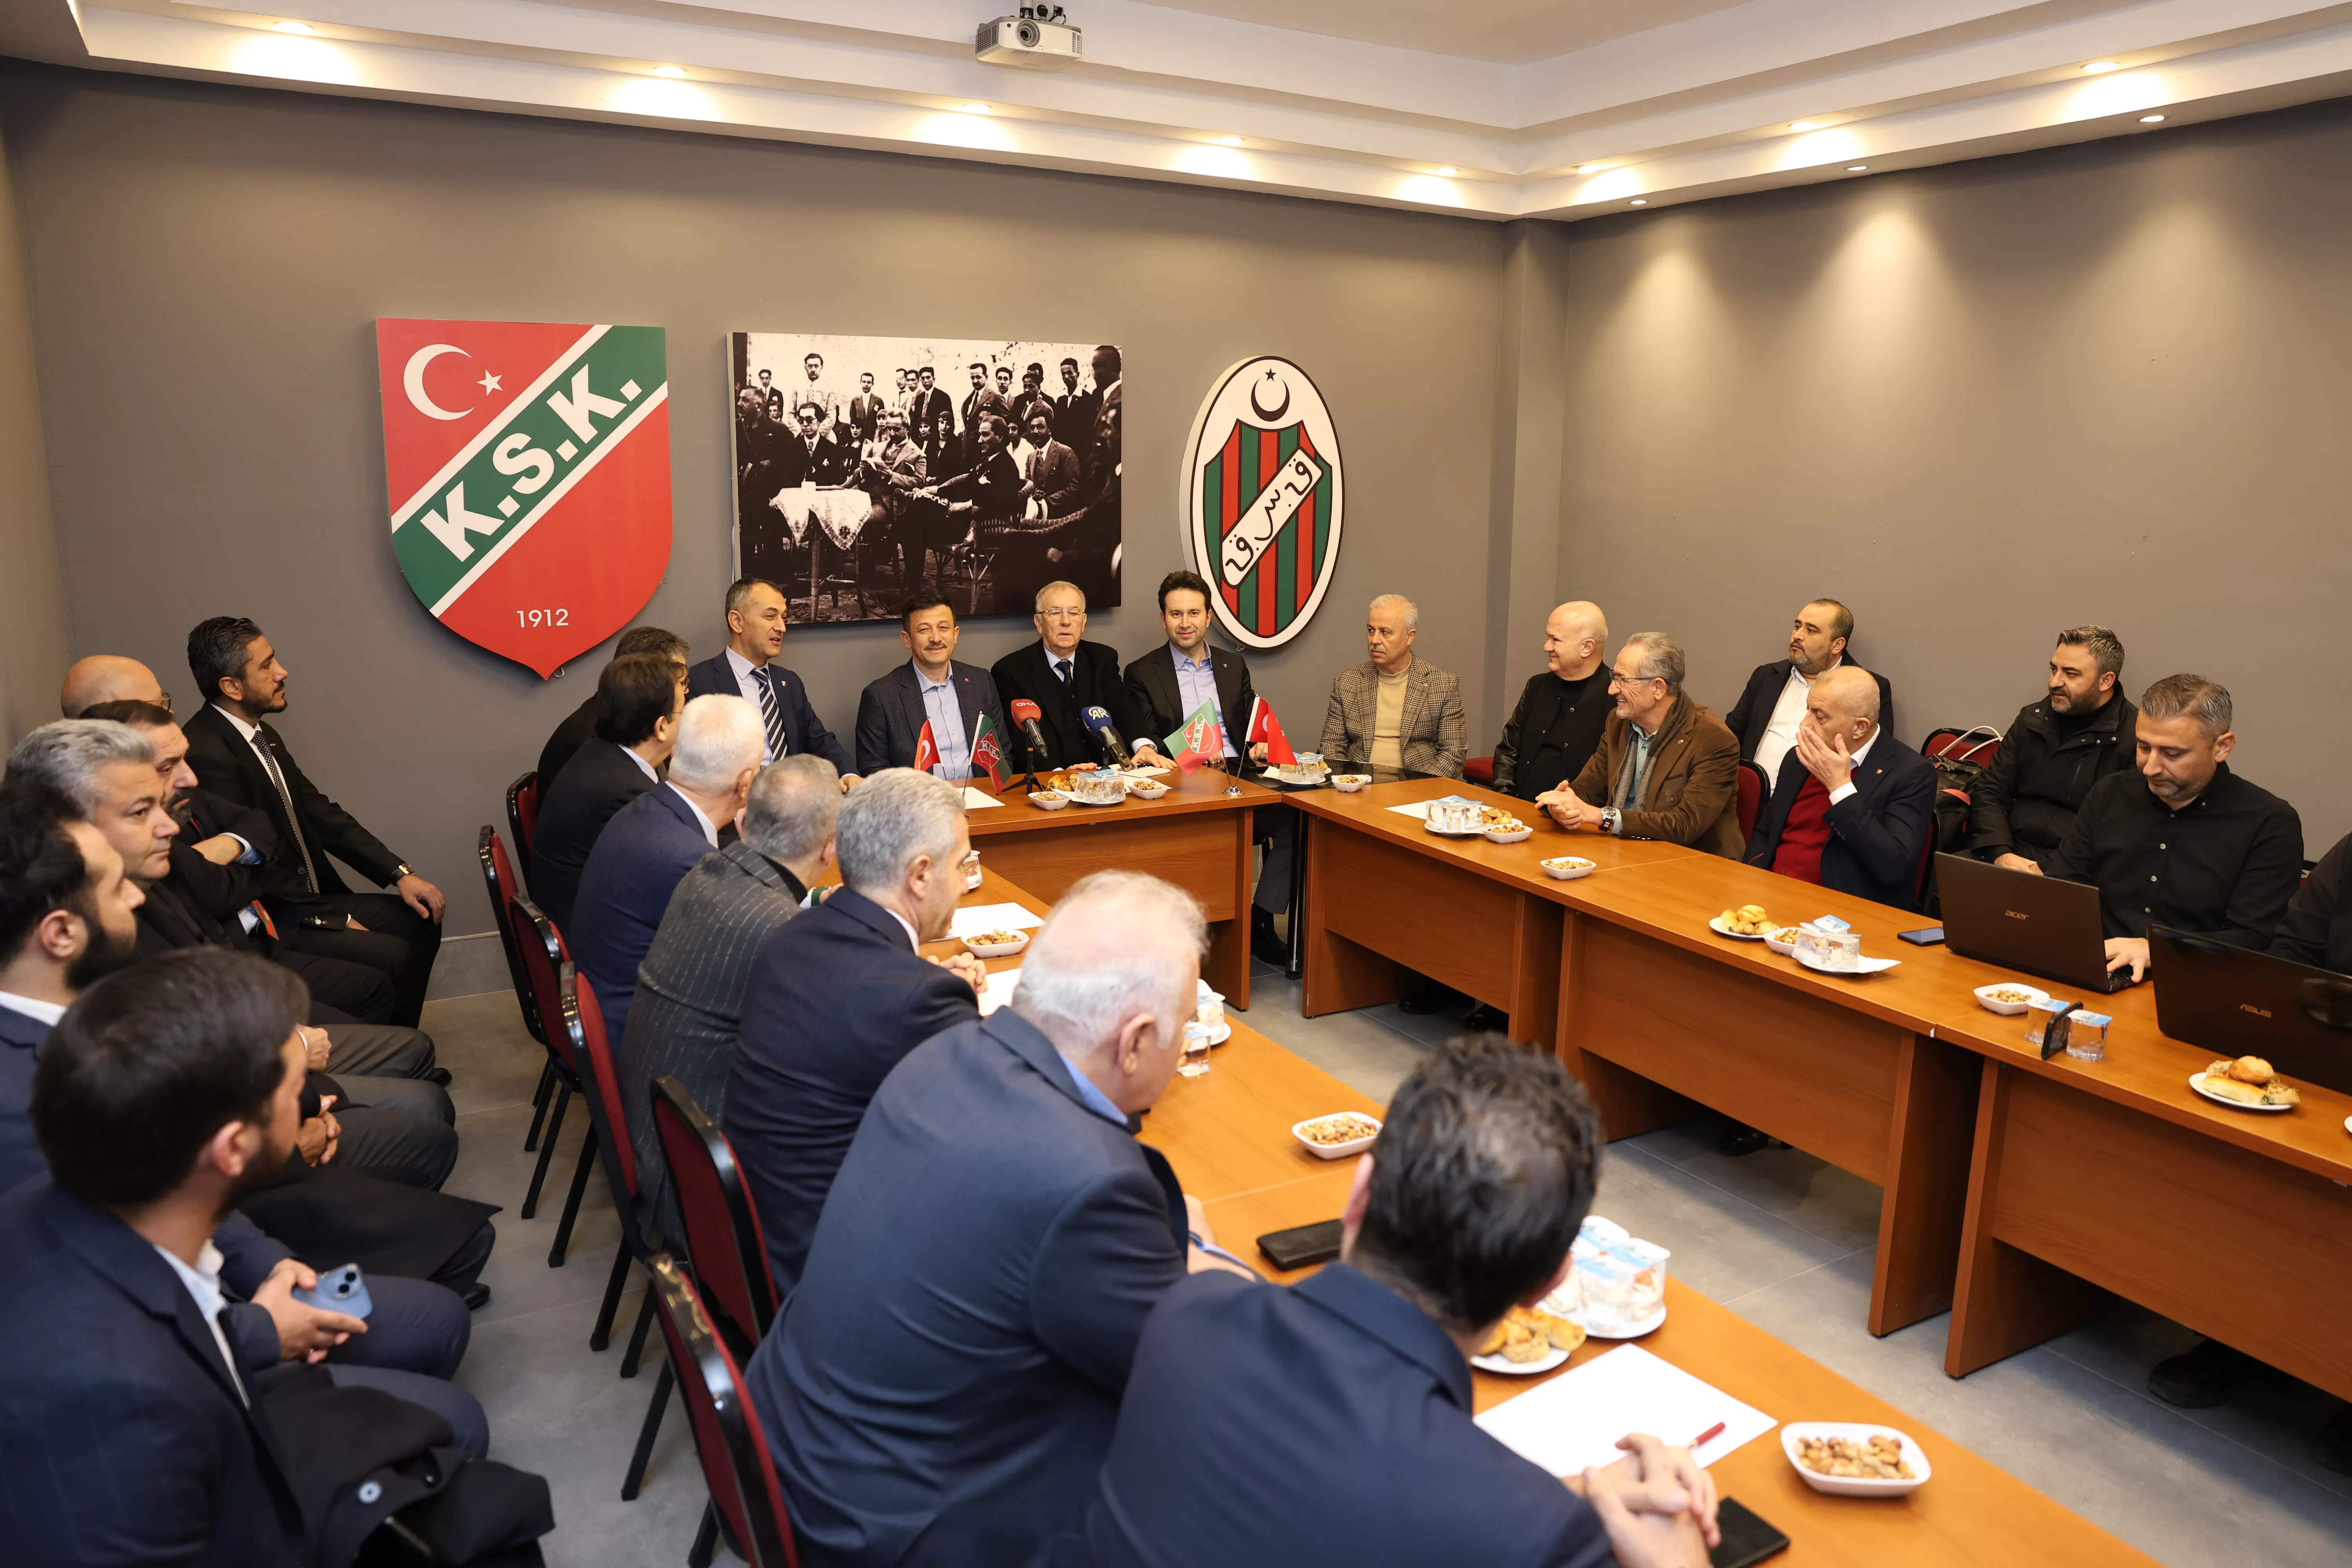 AK Parti İzmir Büyükşehir Belediye Başkan Adayı Hamza Dağ, Karşıyaka Spor Kulübü'nü ziyaret etti. Ziyarette Karşıyaka Stadı'nın yapımı en önemli gündem maddesiydi.